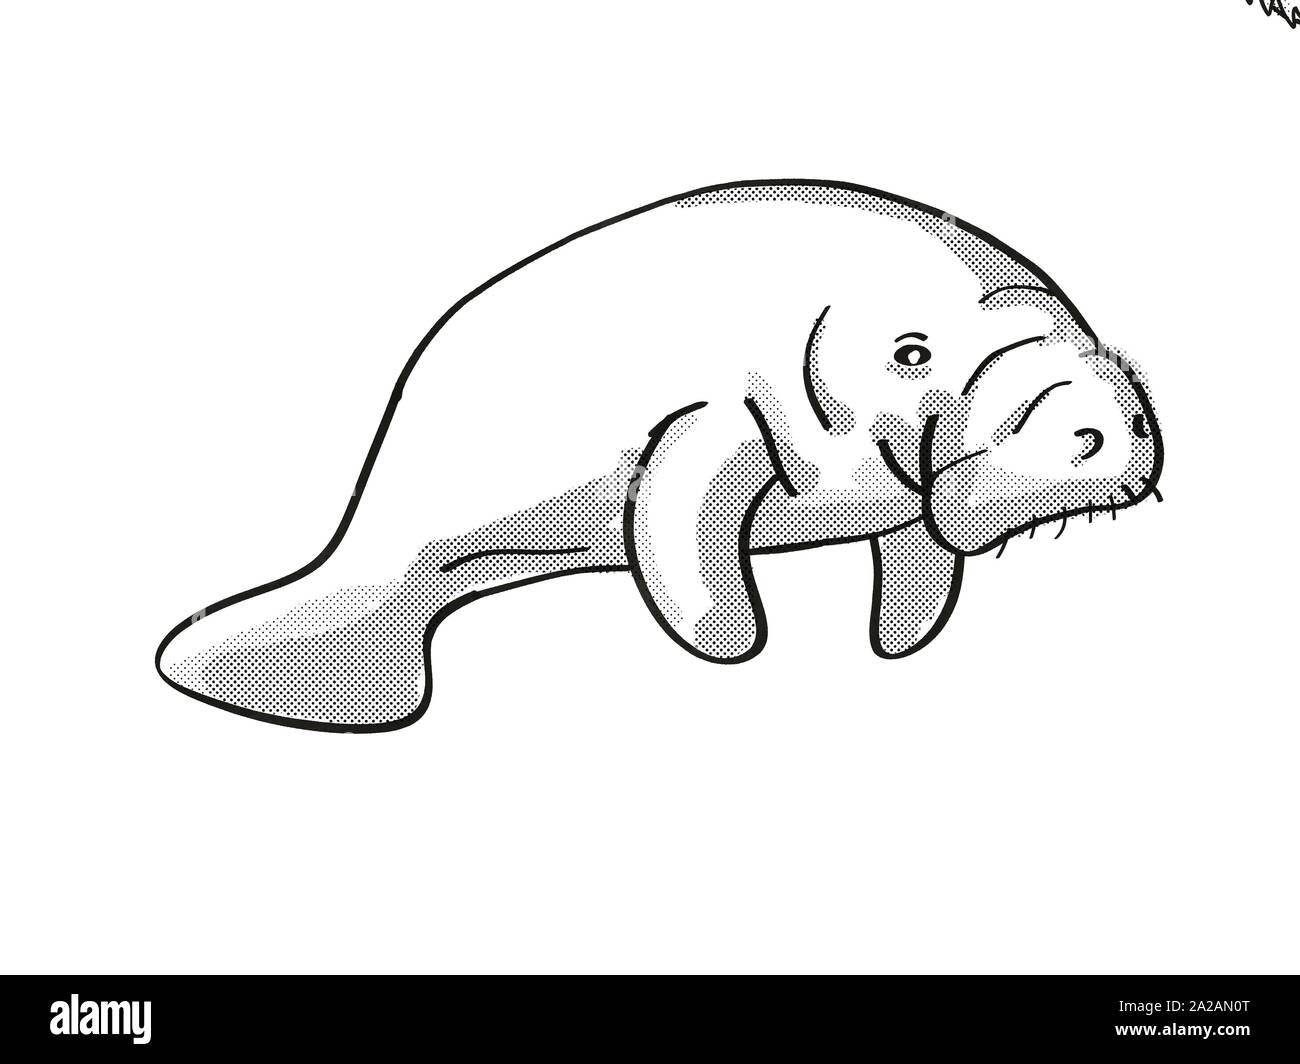 Cartoon Retro estilo de línea mono dibujo de un manatí o vaca marina,  grandes mamíferos marinos herbívoros acuáticos y especies de fauna  amenazadas en aisladas Fotografía de stock - Alamy